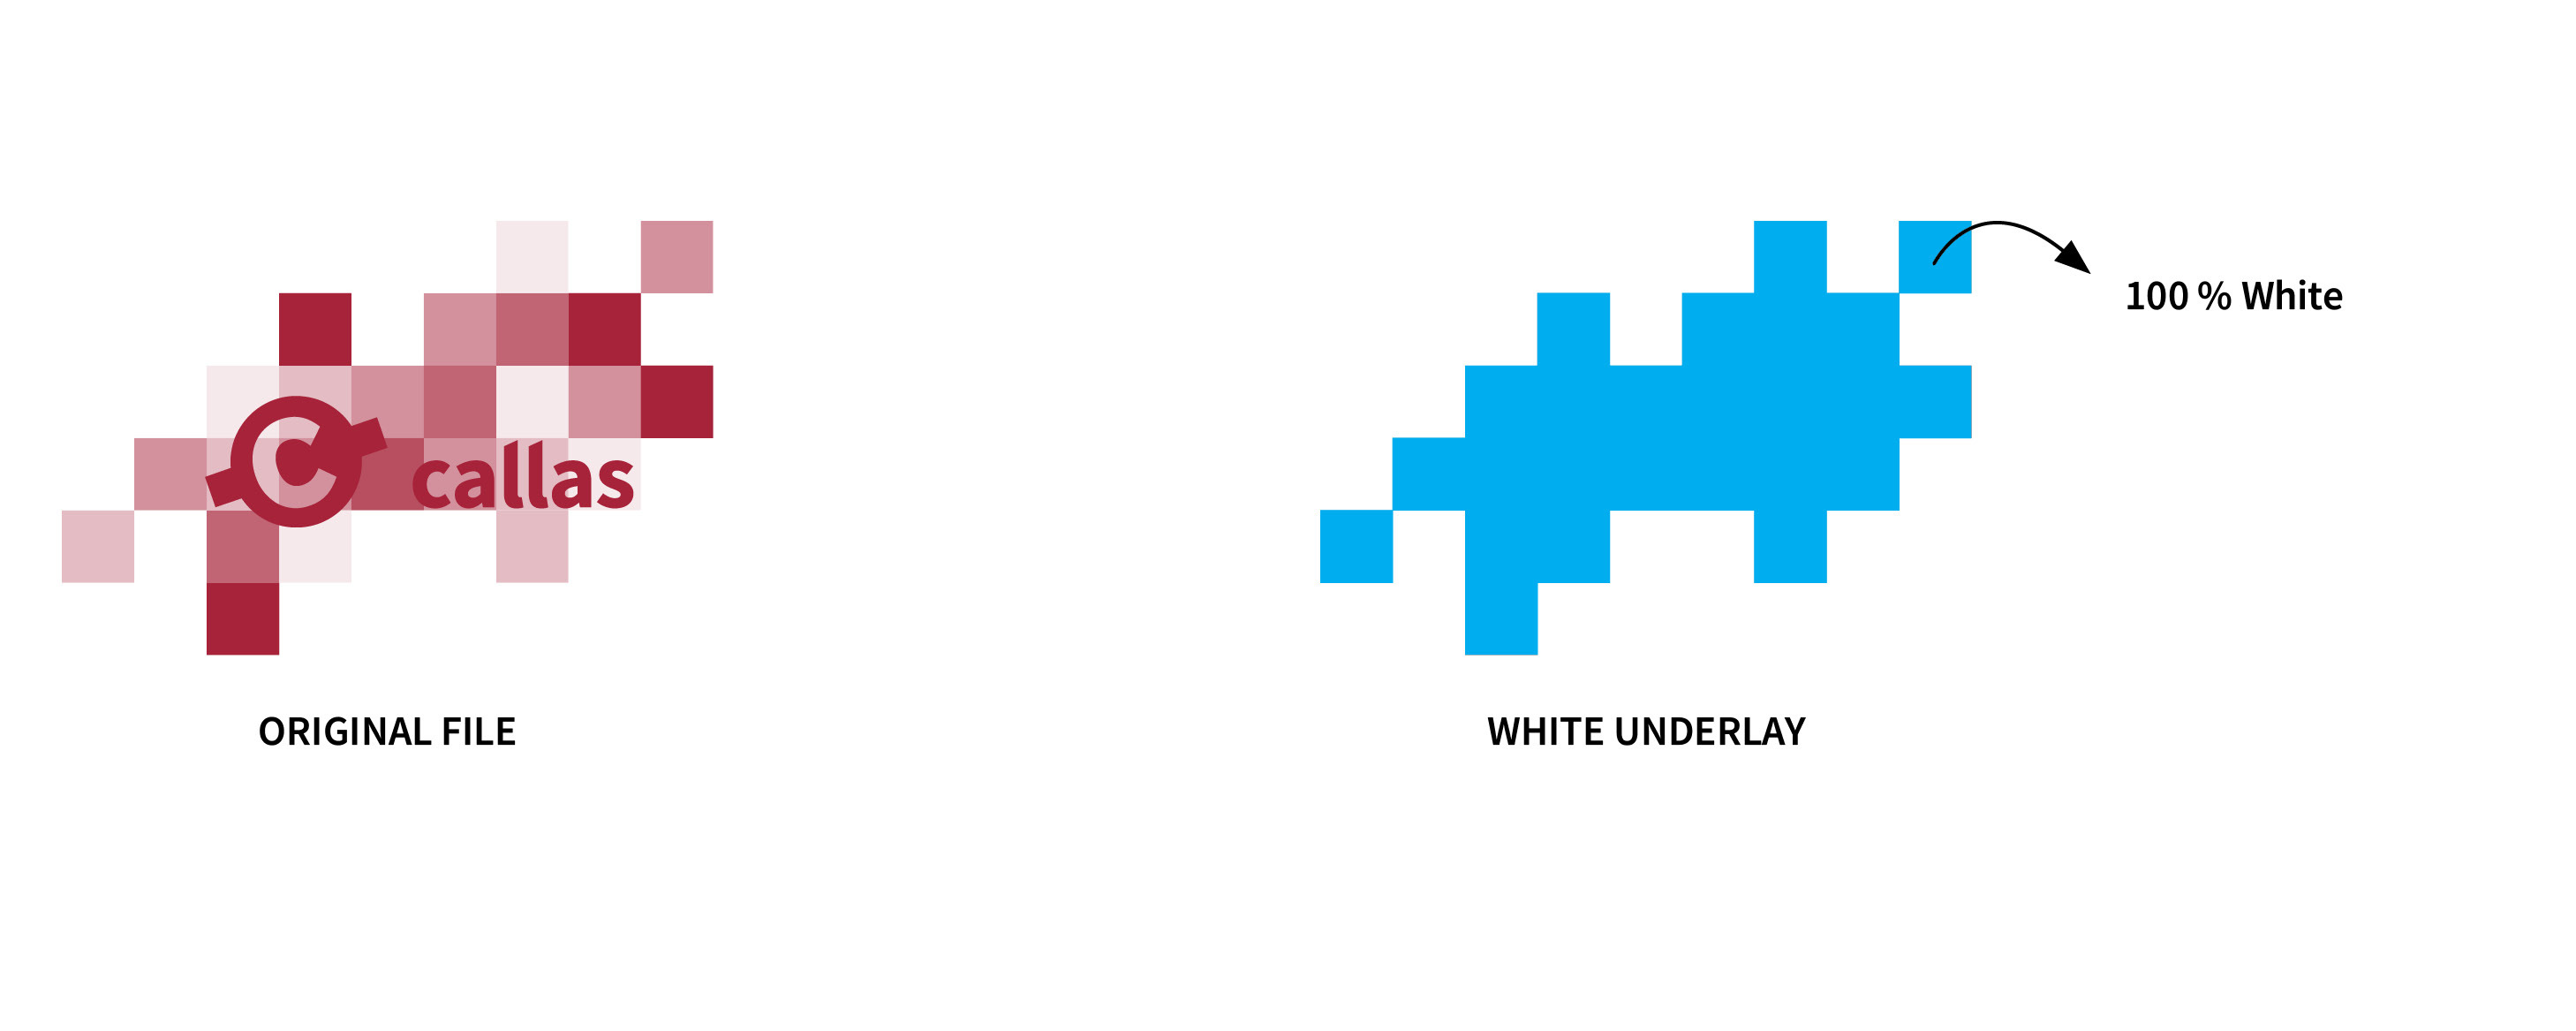 White underlay using